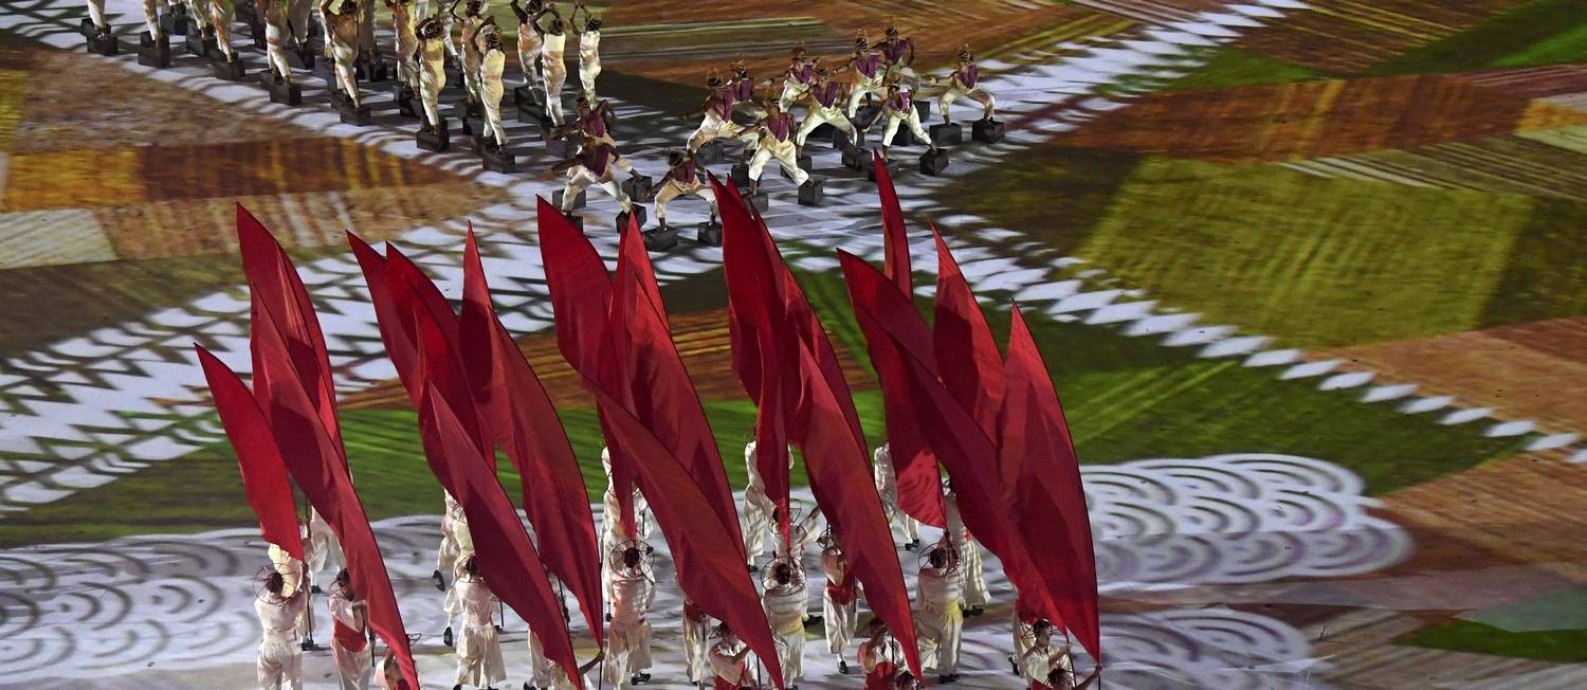 Cerimônia de abertura do Rio-2016 no Maracanã Foto: POOL / REUTERS